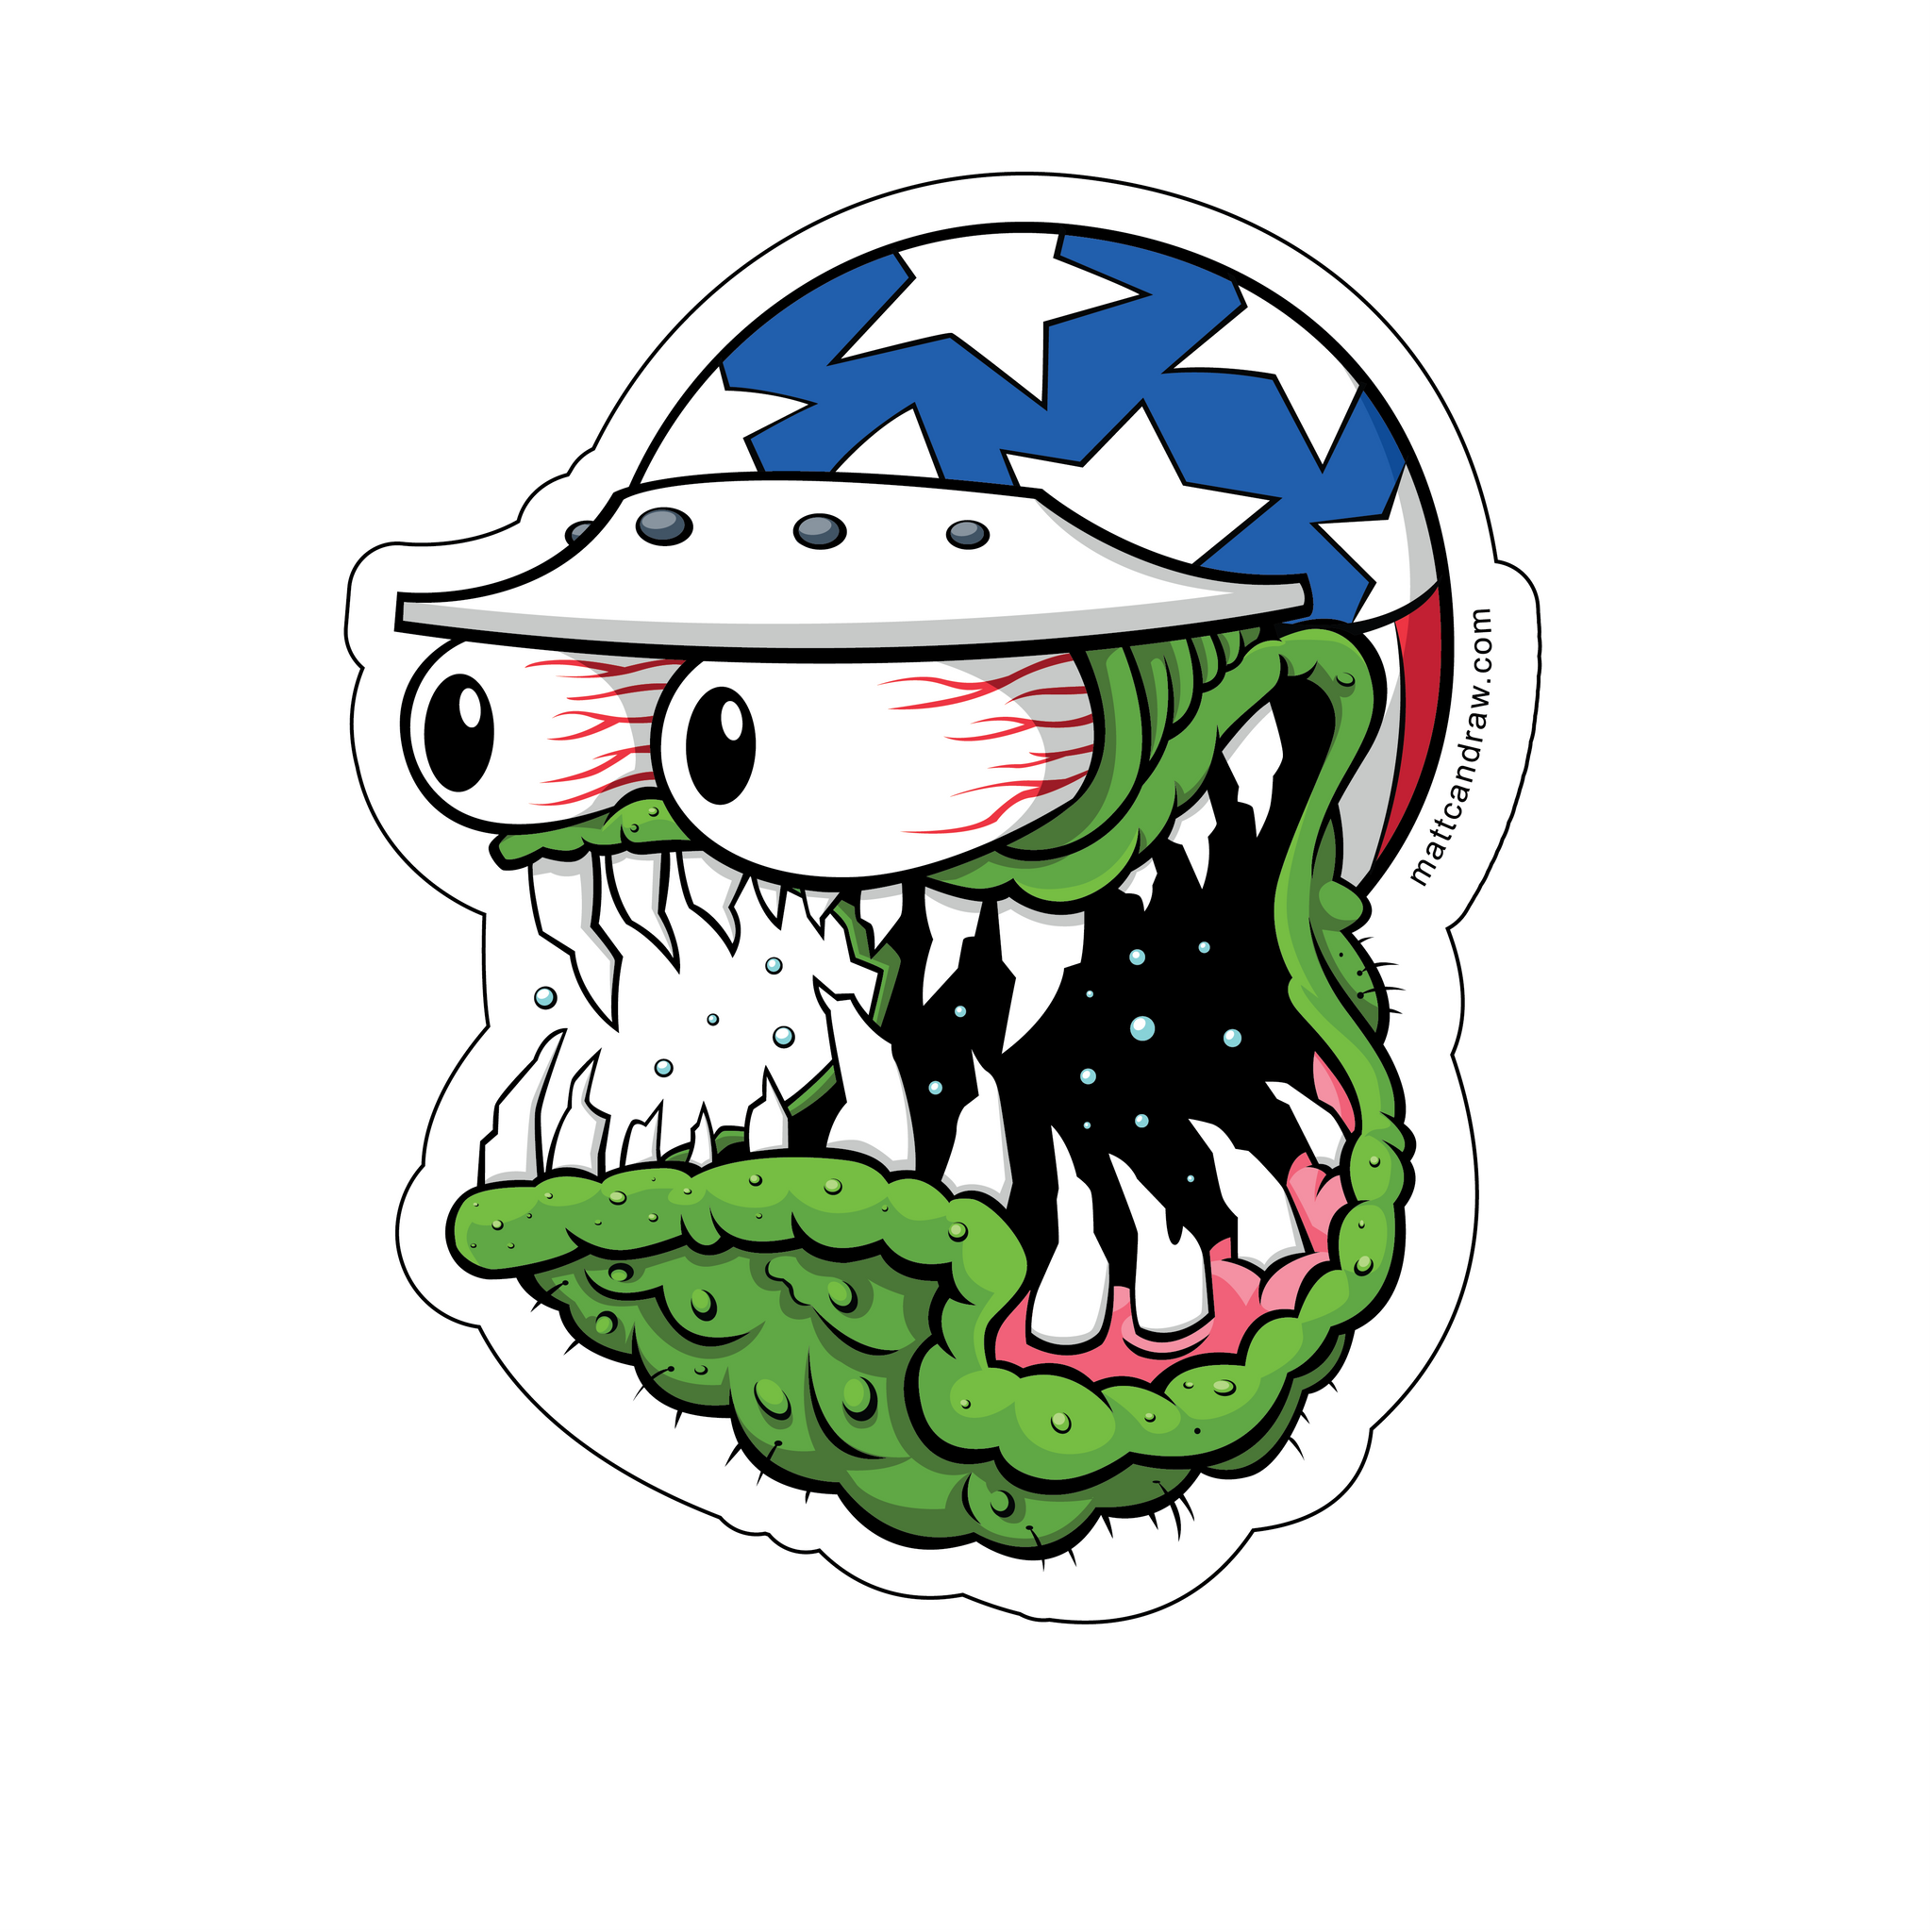 Revenge of the Fink - Monster Sticker Pack – bellyfloprhino